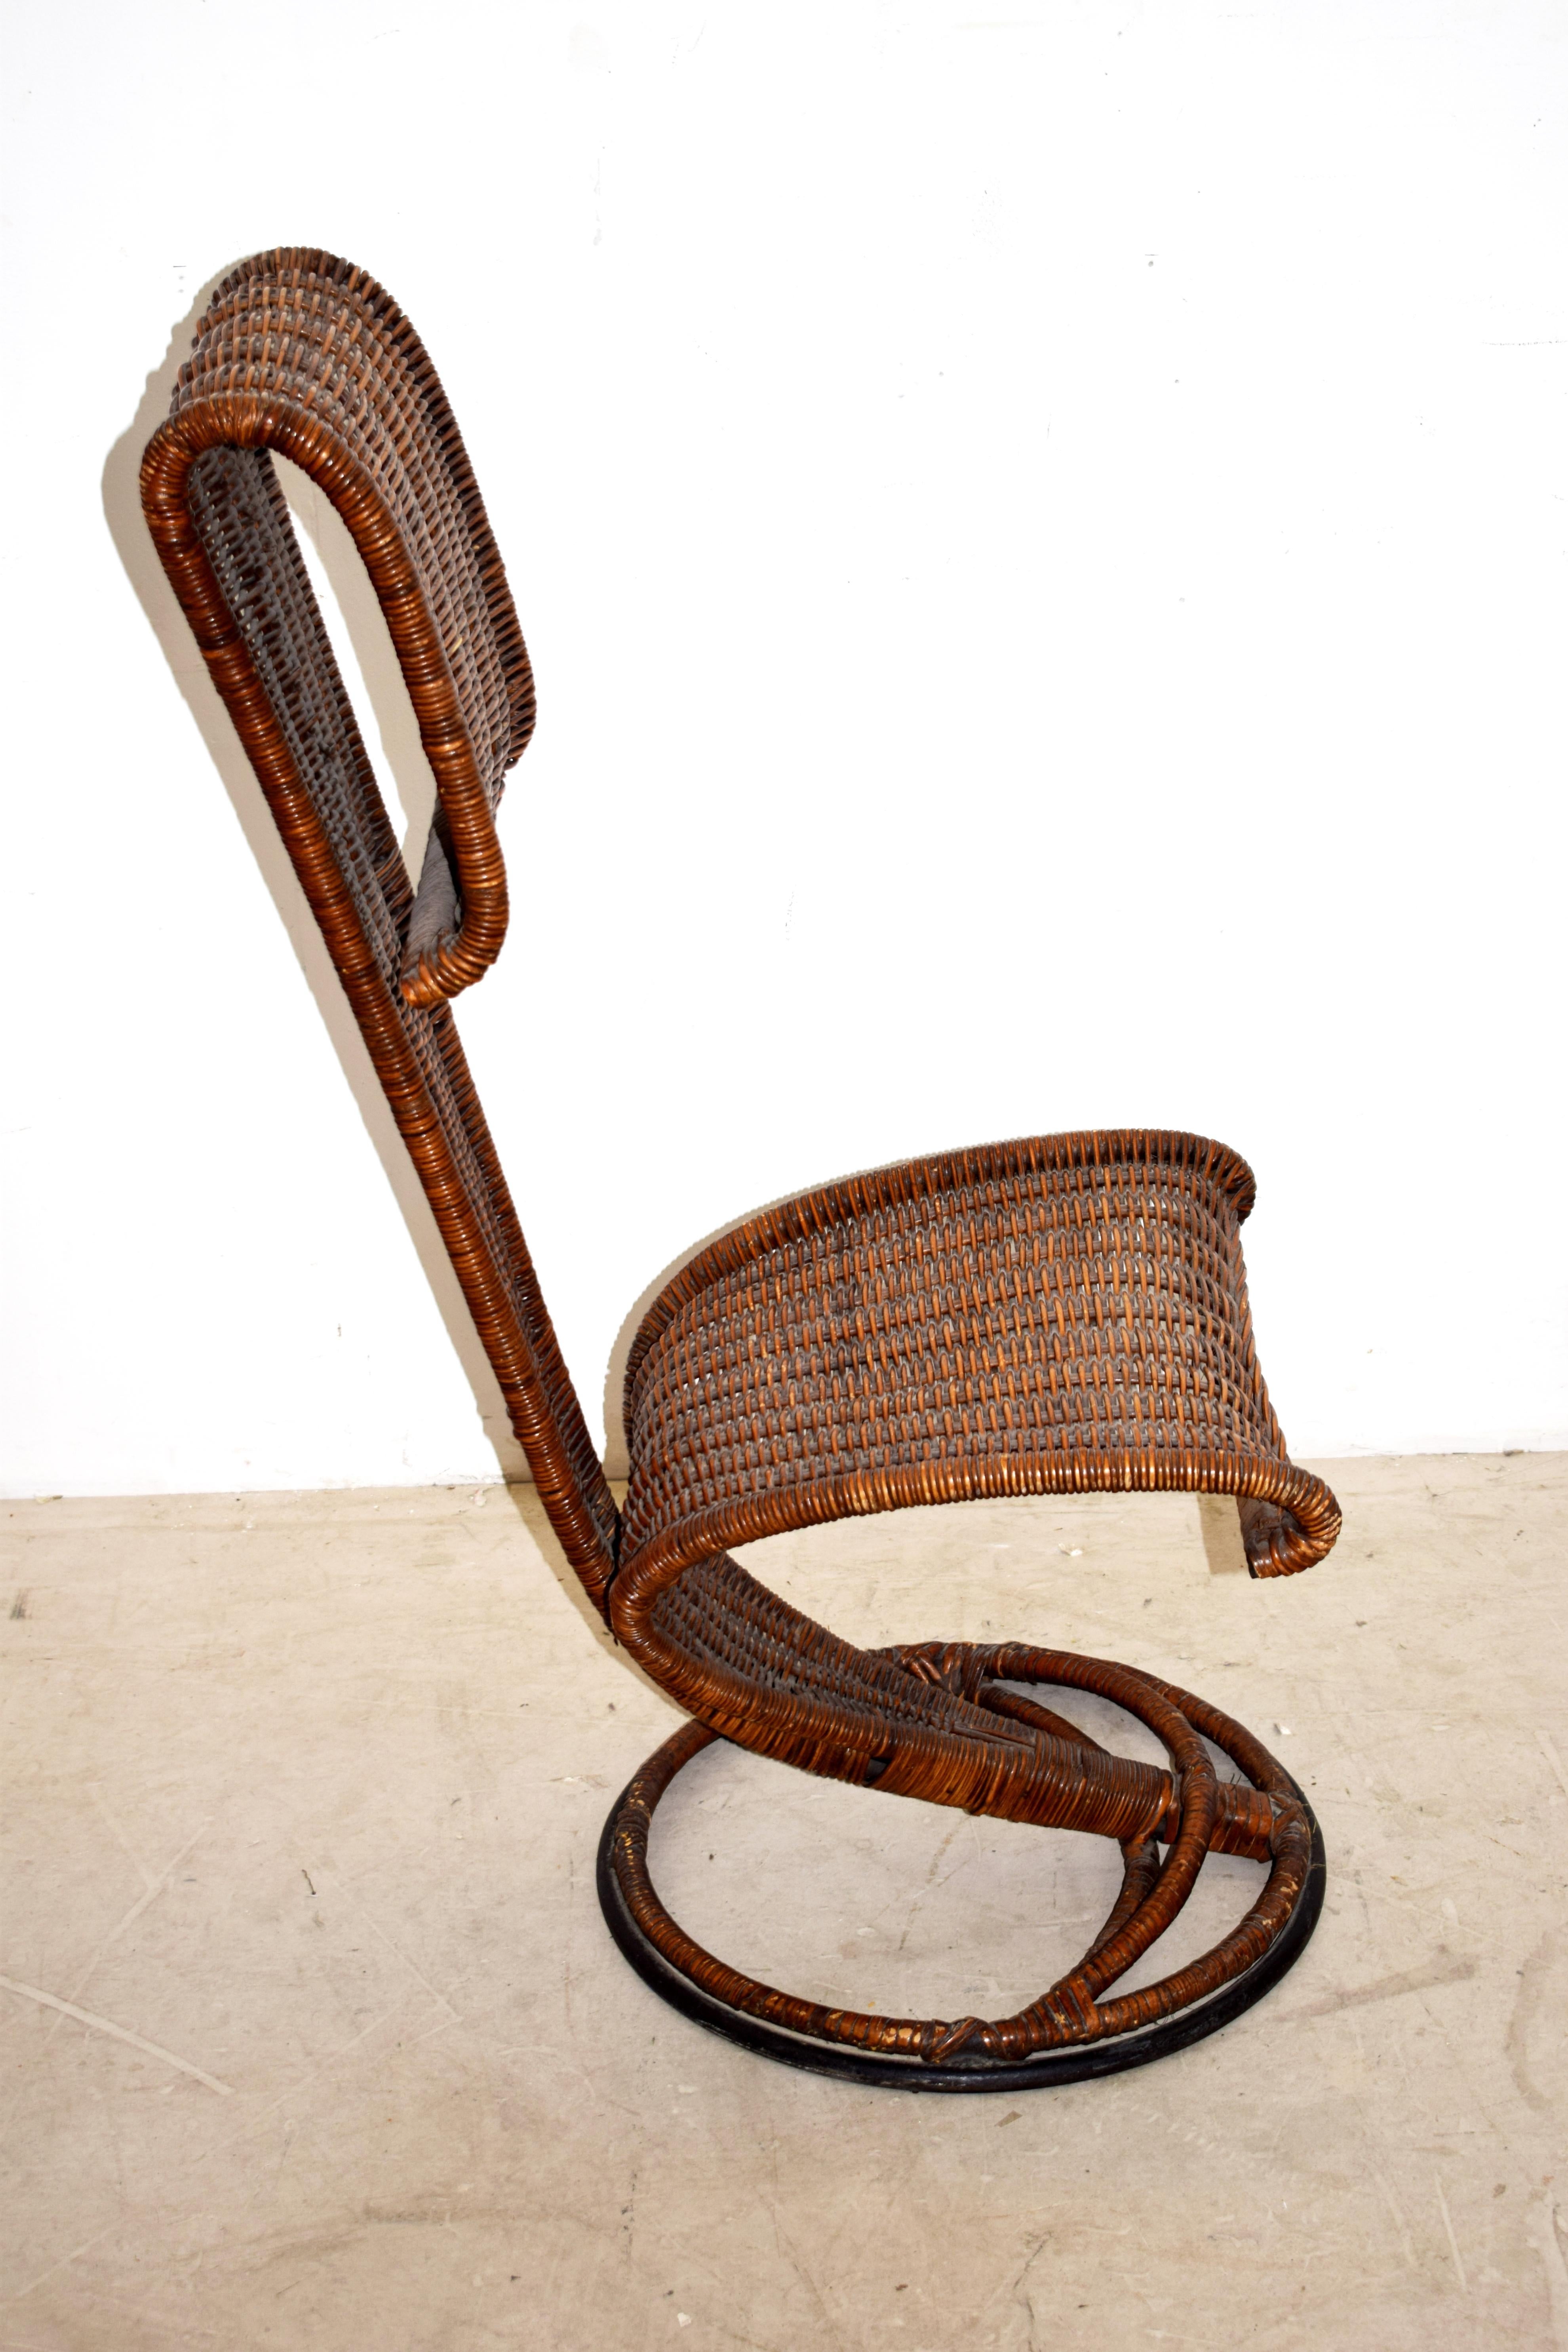 Chaise italienne attribuée à Marzio Cecchi, années 1960.
Dimensions : H= 93 cm ; L= 42 cm ; P= 55 cm ; Hauteur du siège = 42 cm : H= 93 cm ; L= 42 cm ; P= 55 cm ; Hauteur assise = 42 cm.